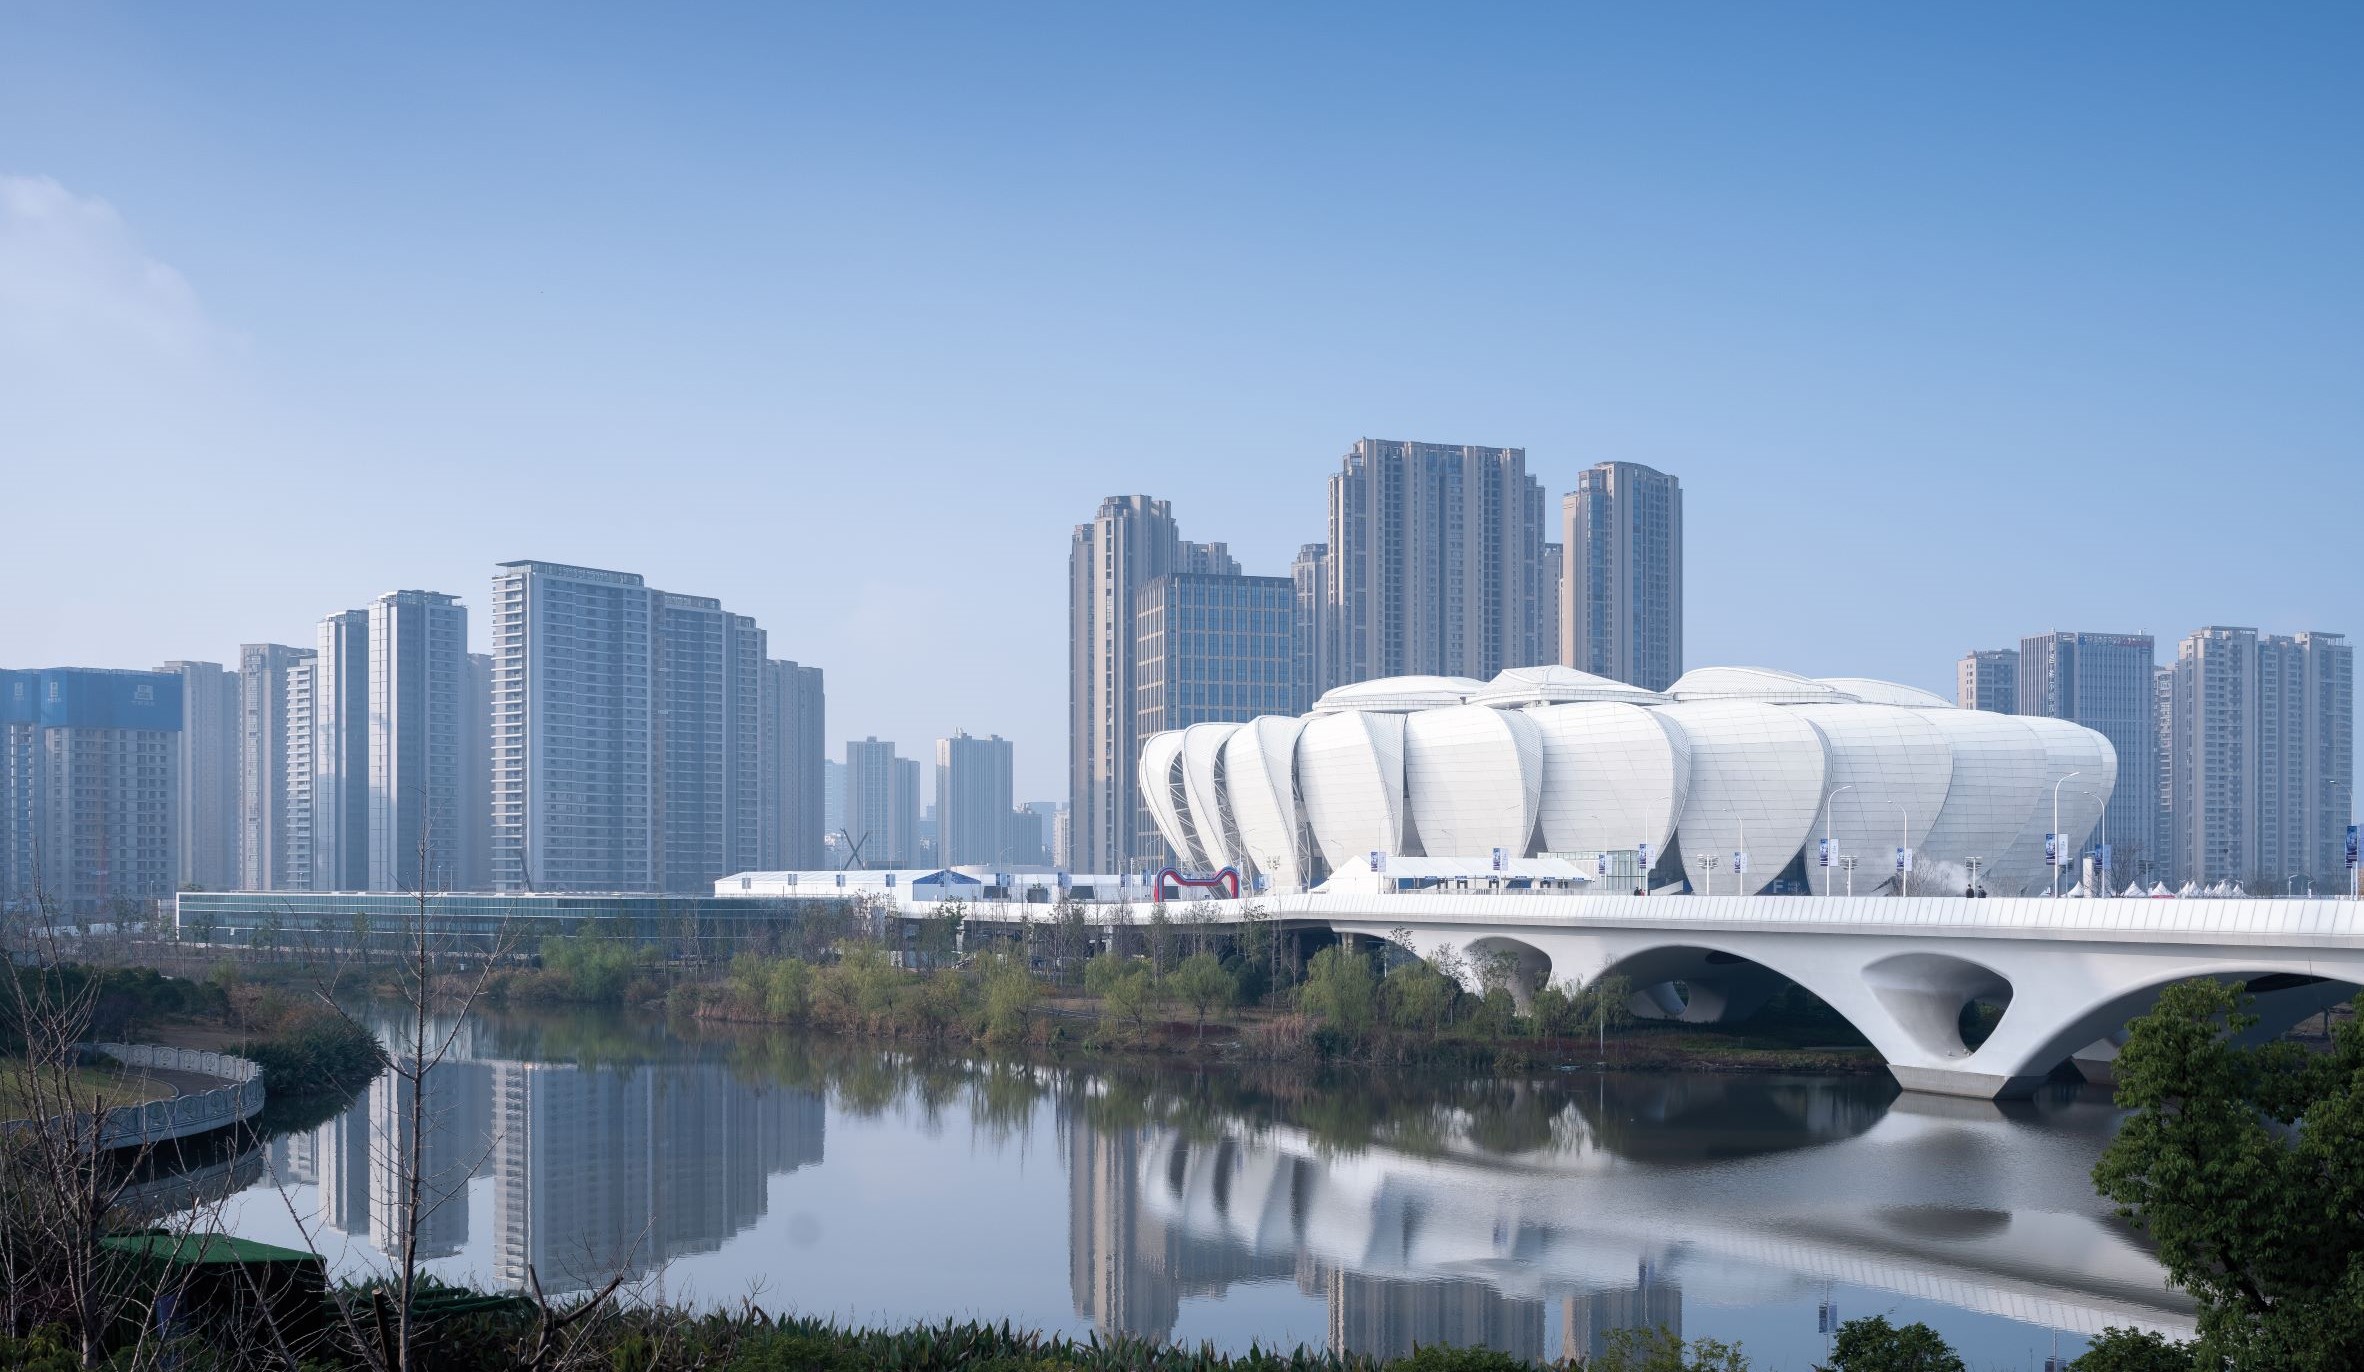 以江畔蓮花為設計靈感的杭州奧林匹克運動中心場館建築。